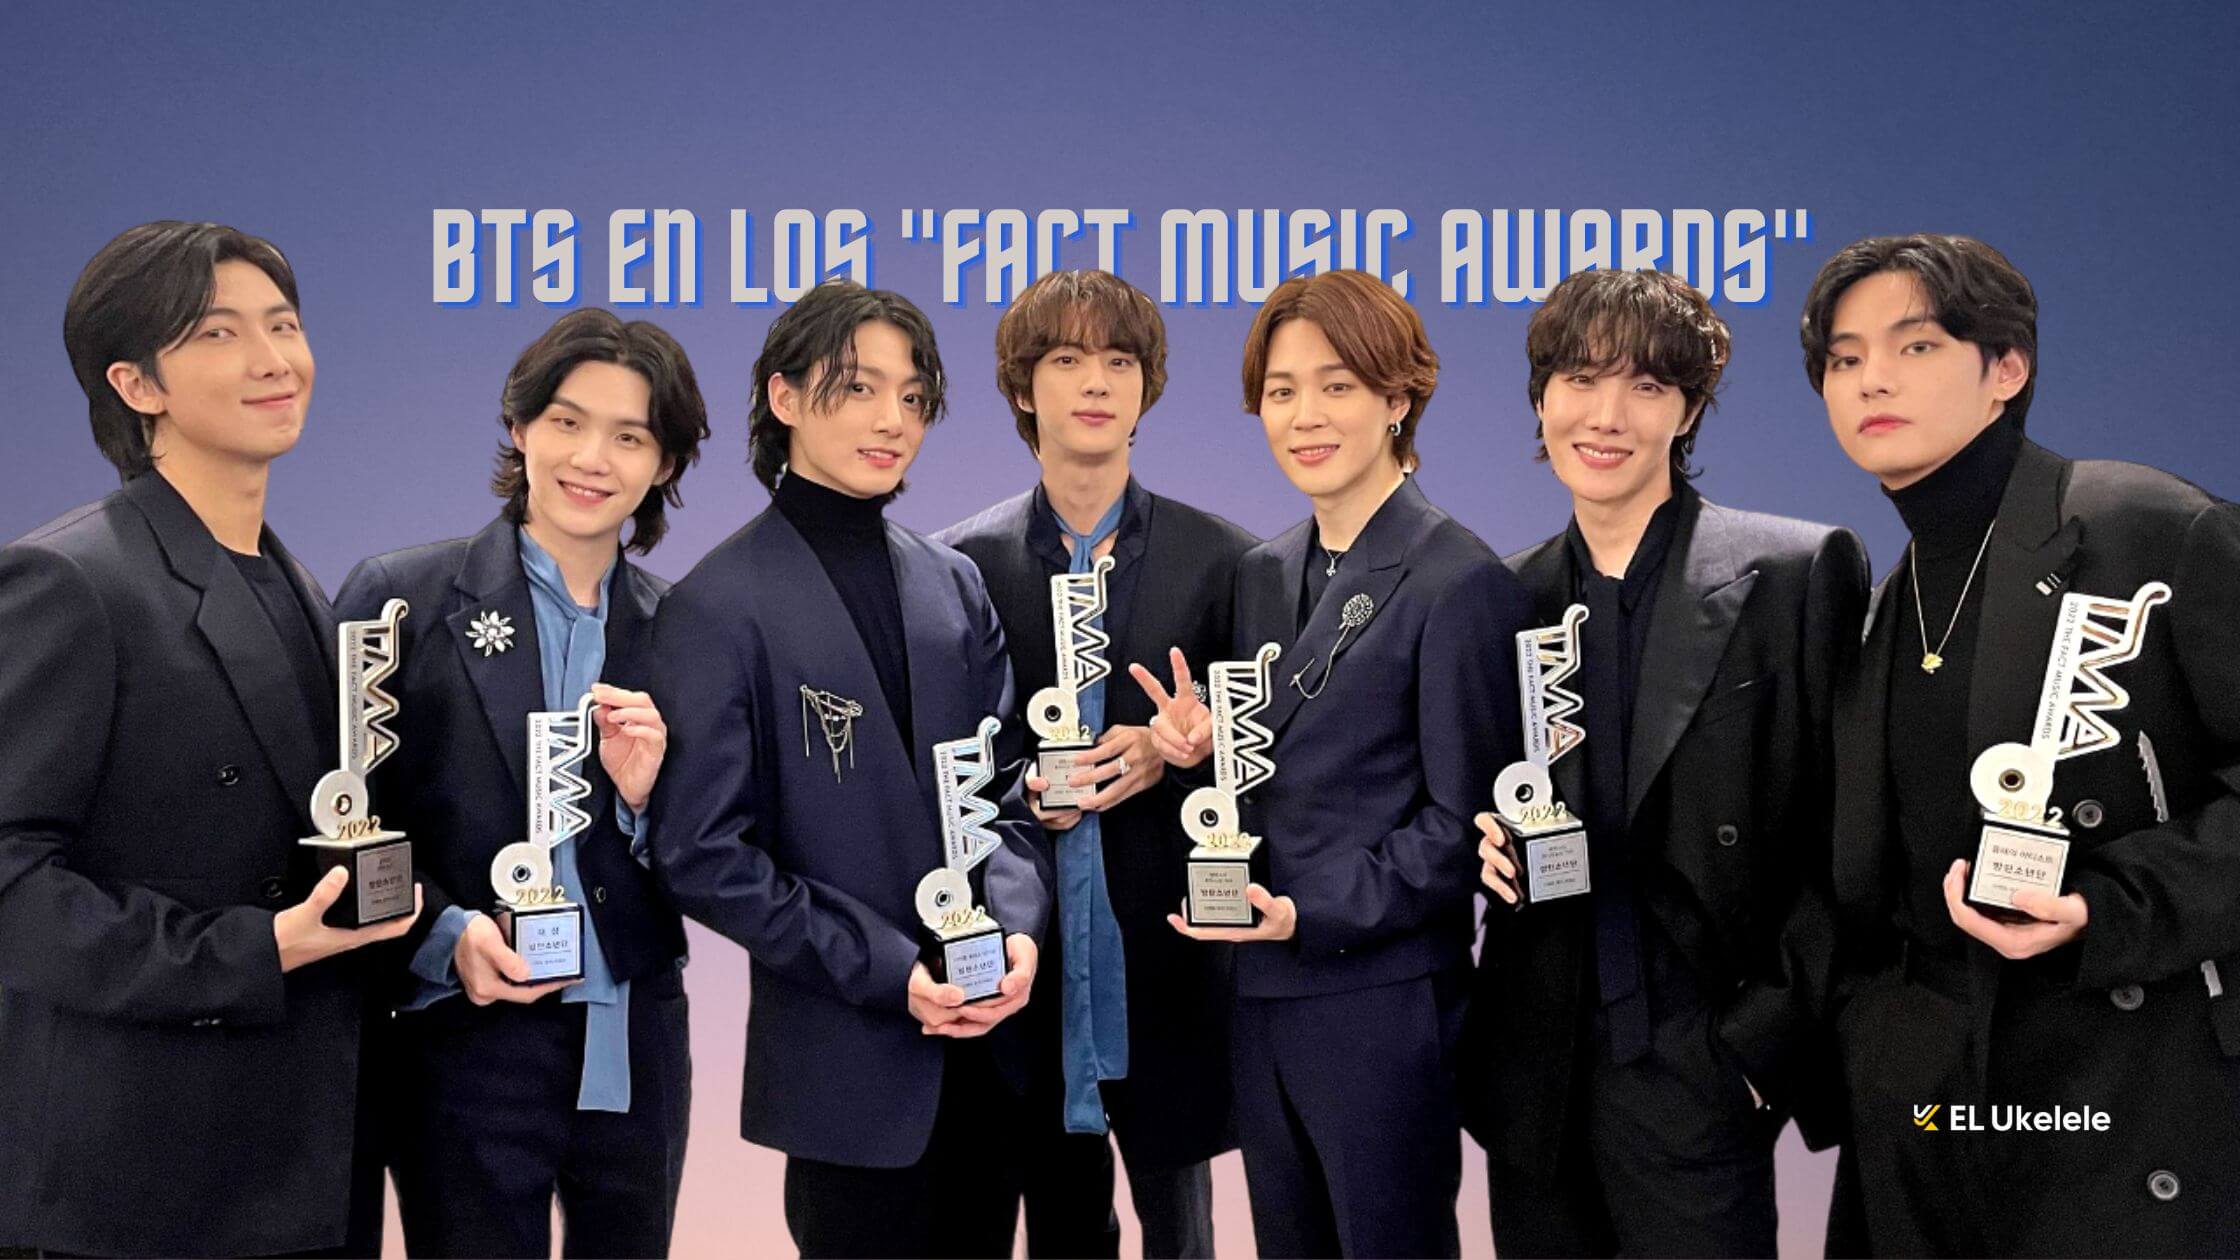 BTS en los Fact Music Awards una ceremonia de premios para celebrar el K Pop 2